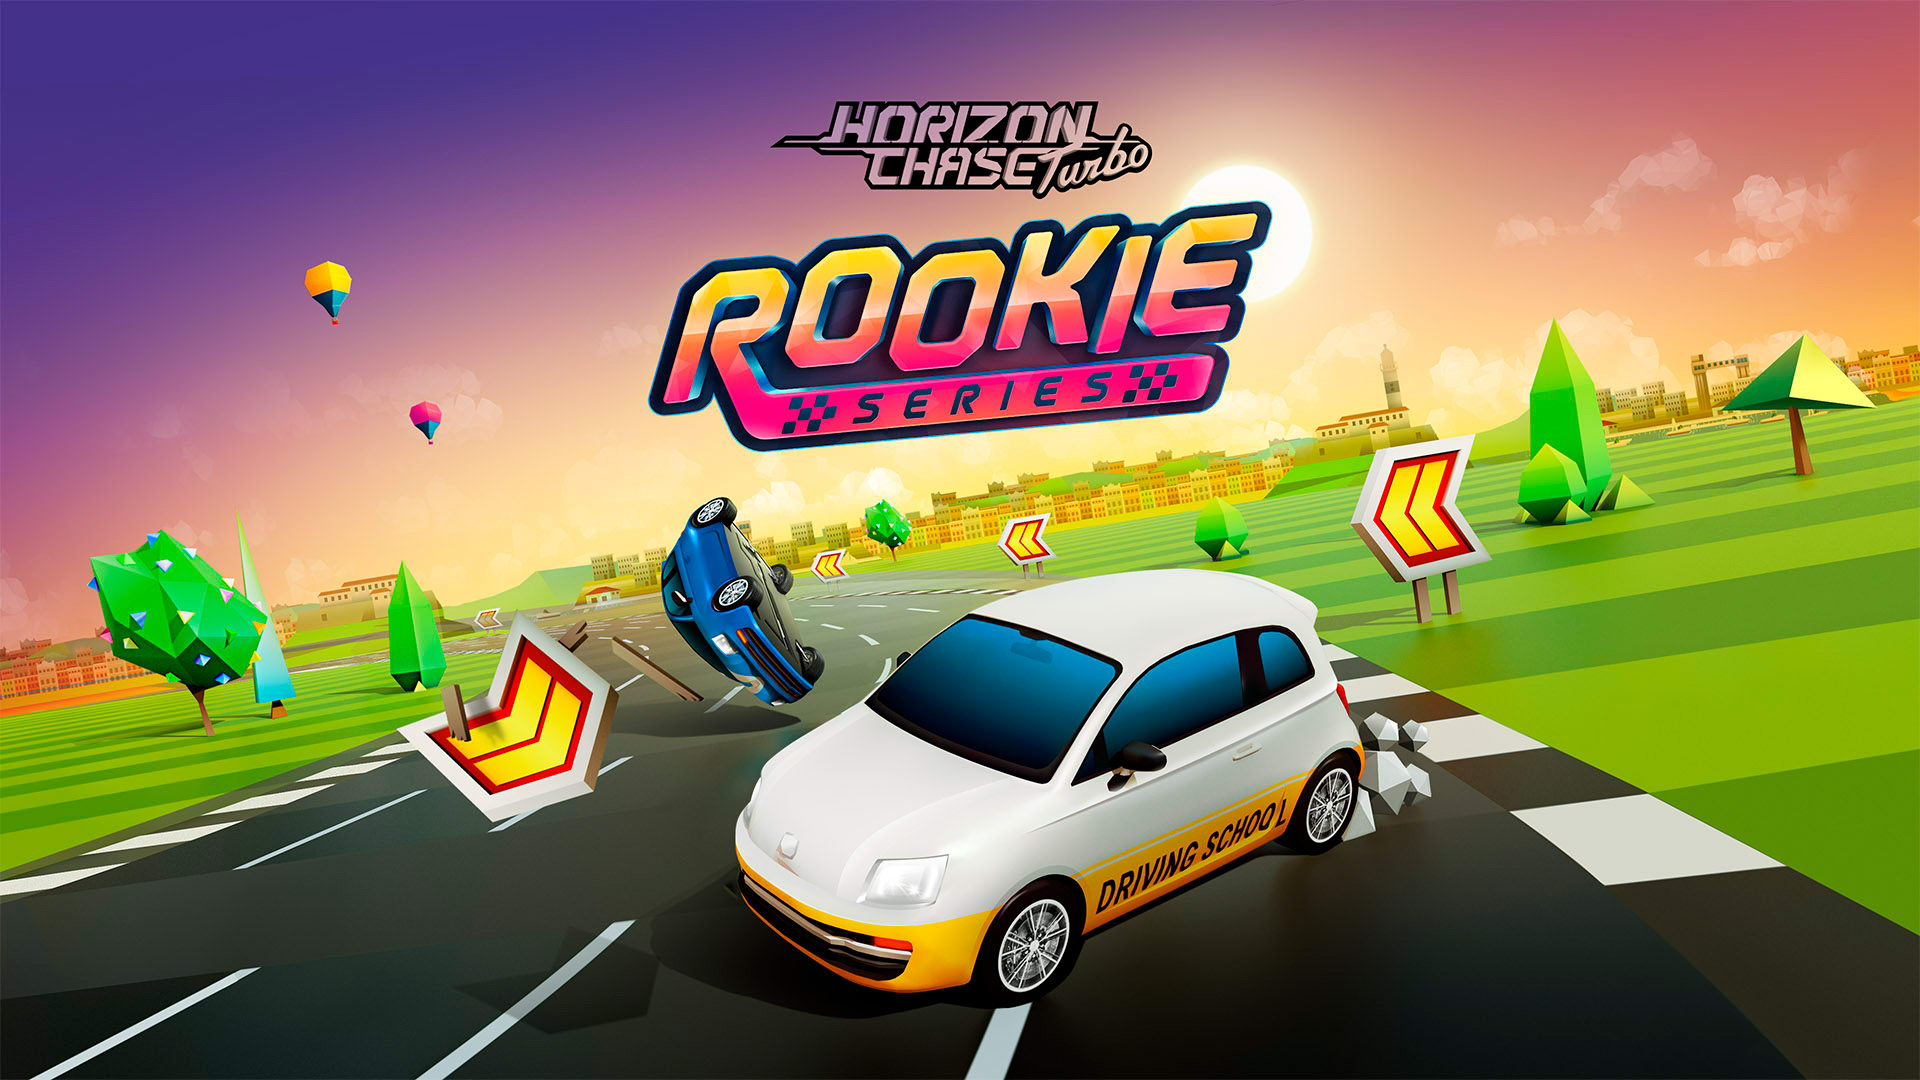 Horizon Chase Turbo - Rookie Series